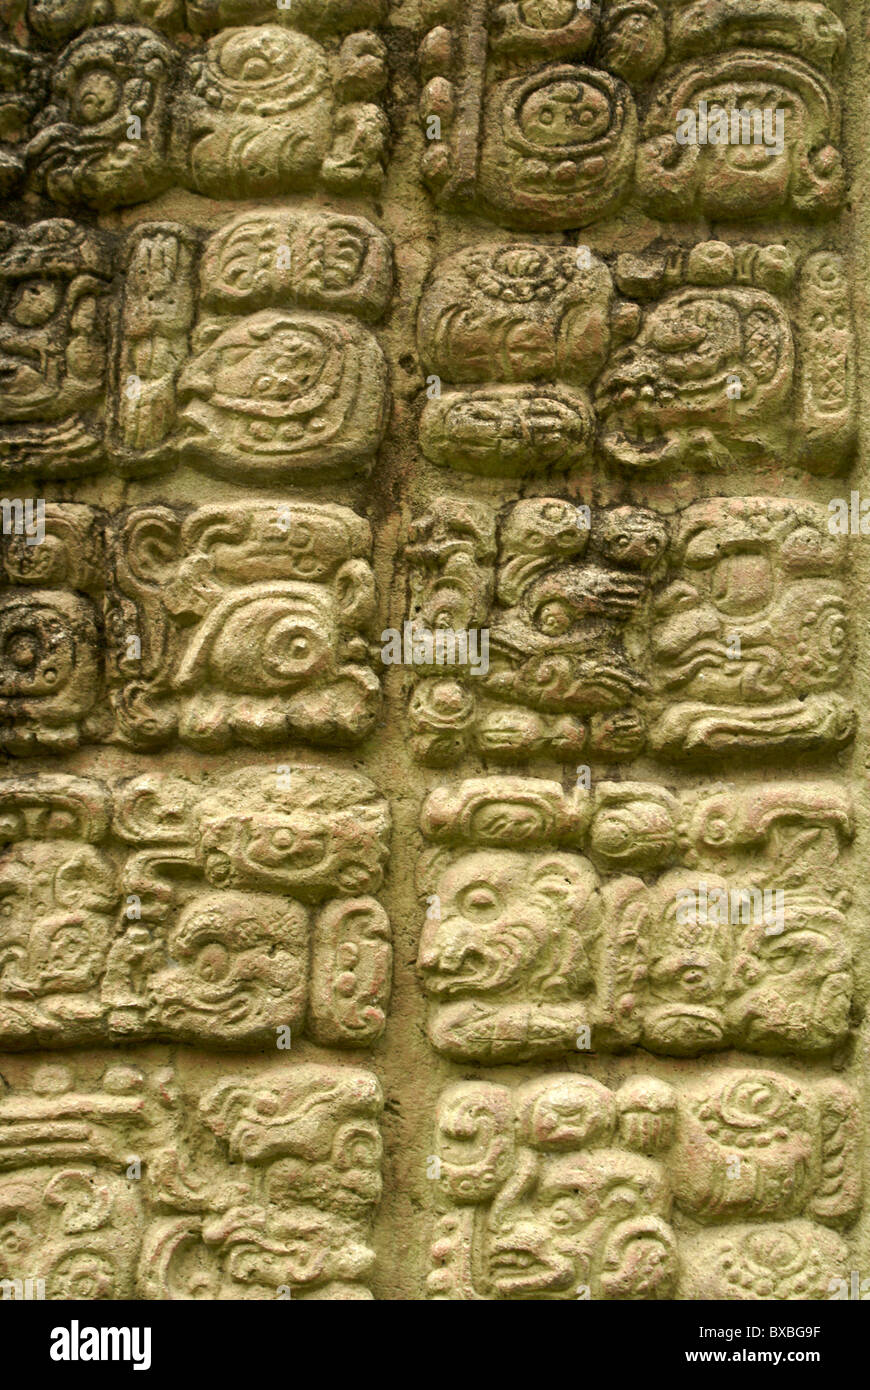 Les glyphes mayas sur une stèle au les ruines Maya de Copan, Honduras. Copan est un UNESCO World Heritage Site. Banque D'Images